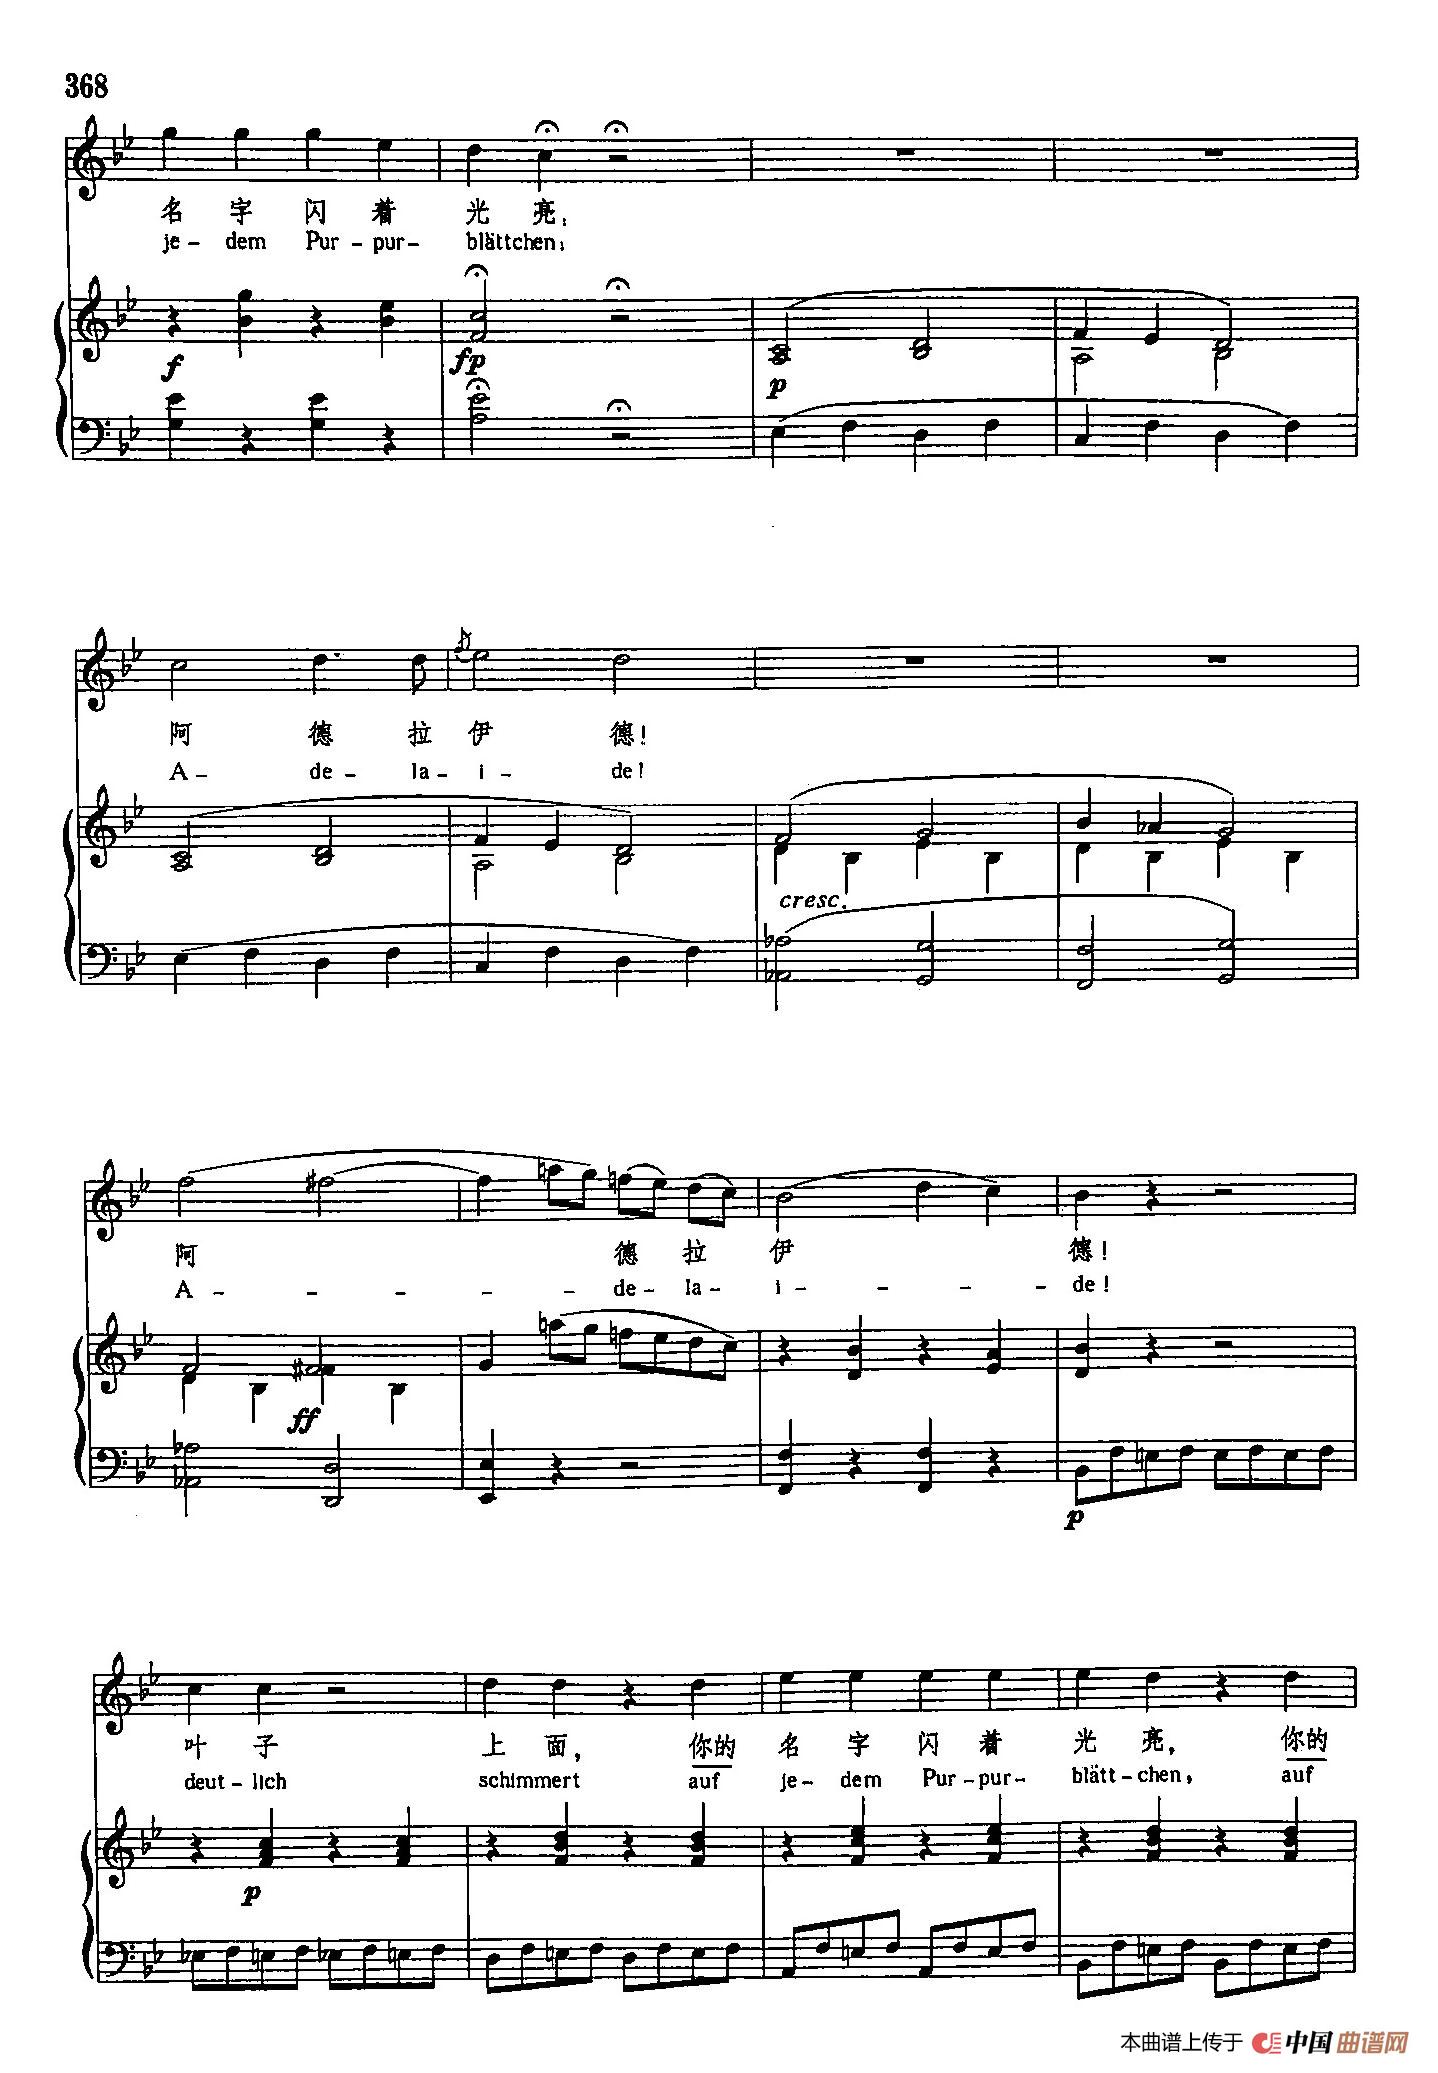 声乐教学曲库3-[德]75阿德拉伊得（正谱） (1)_原文件名：声乐教学曲库3-[德]75阿德拉伊得（正谱）11.jpg